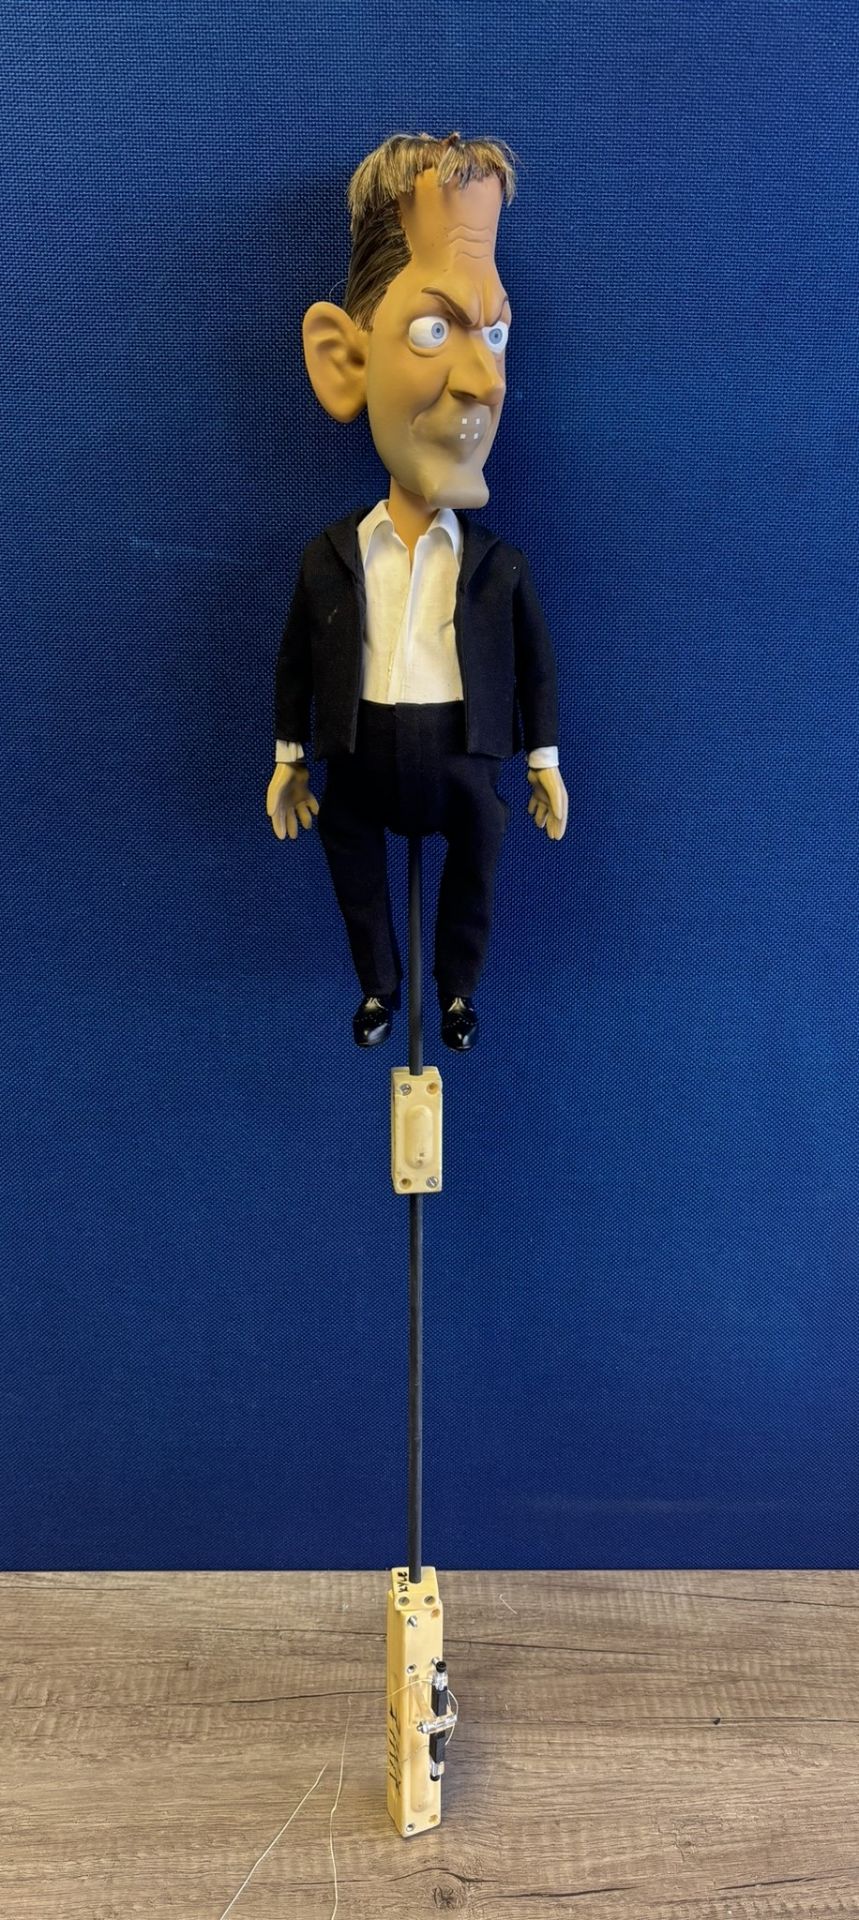 Newzoid puppet - Jeremy Kyle - Image 3 of 3